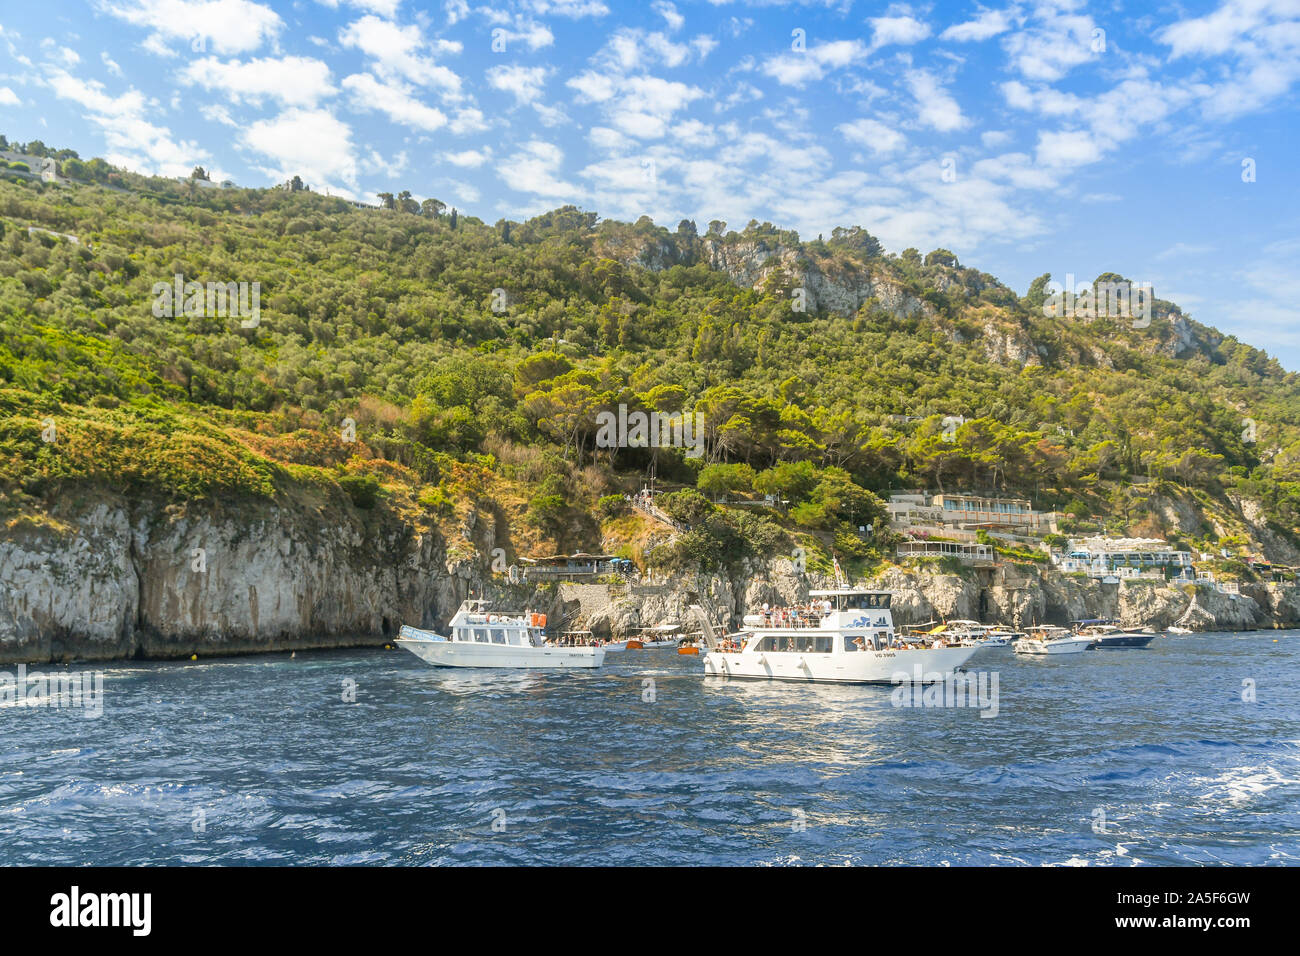 Isola di Capri - Agosto 2019: piccole imbarcazioni in attesa di visitare la "Grotta Azzurra" o "Grotta Azzurra" grotta sulla costa dell'isola di Capri Foto Stock